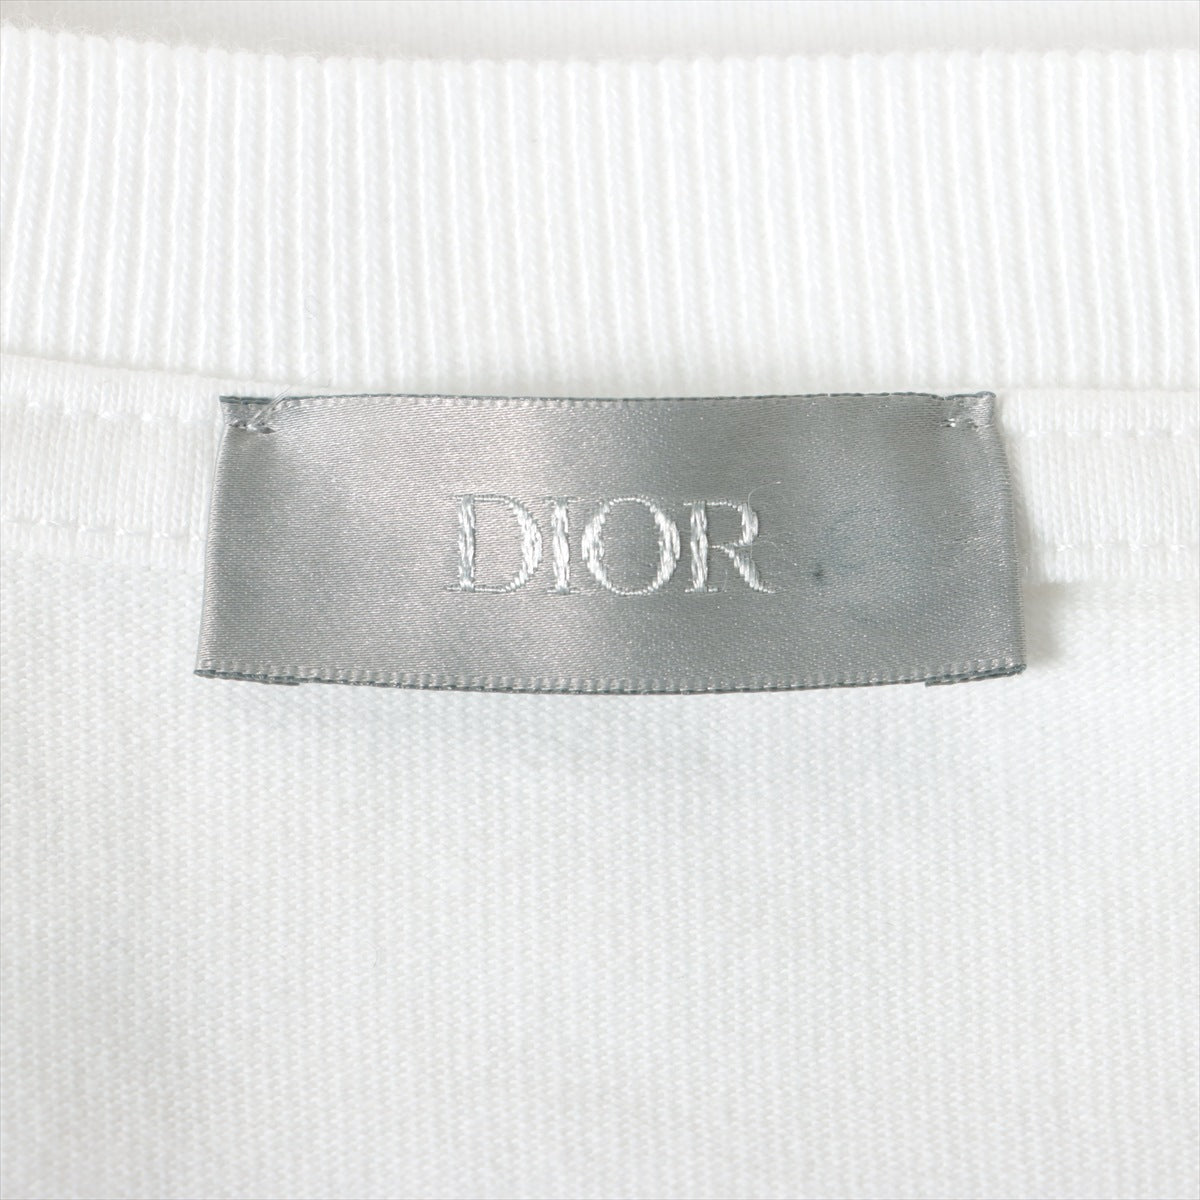 Dior x Travis Scott 22AW Cotton Long T shirts S Men's White  283J647A0554